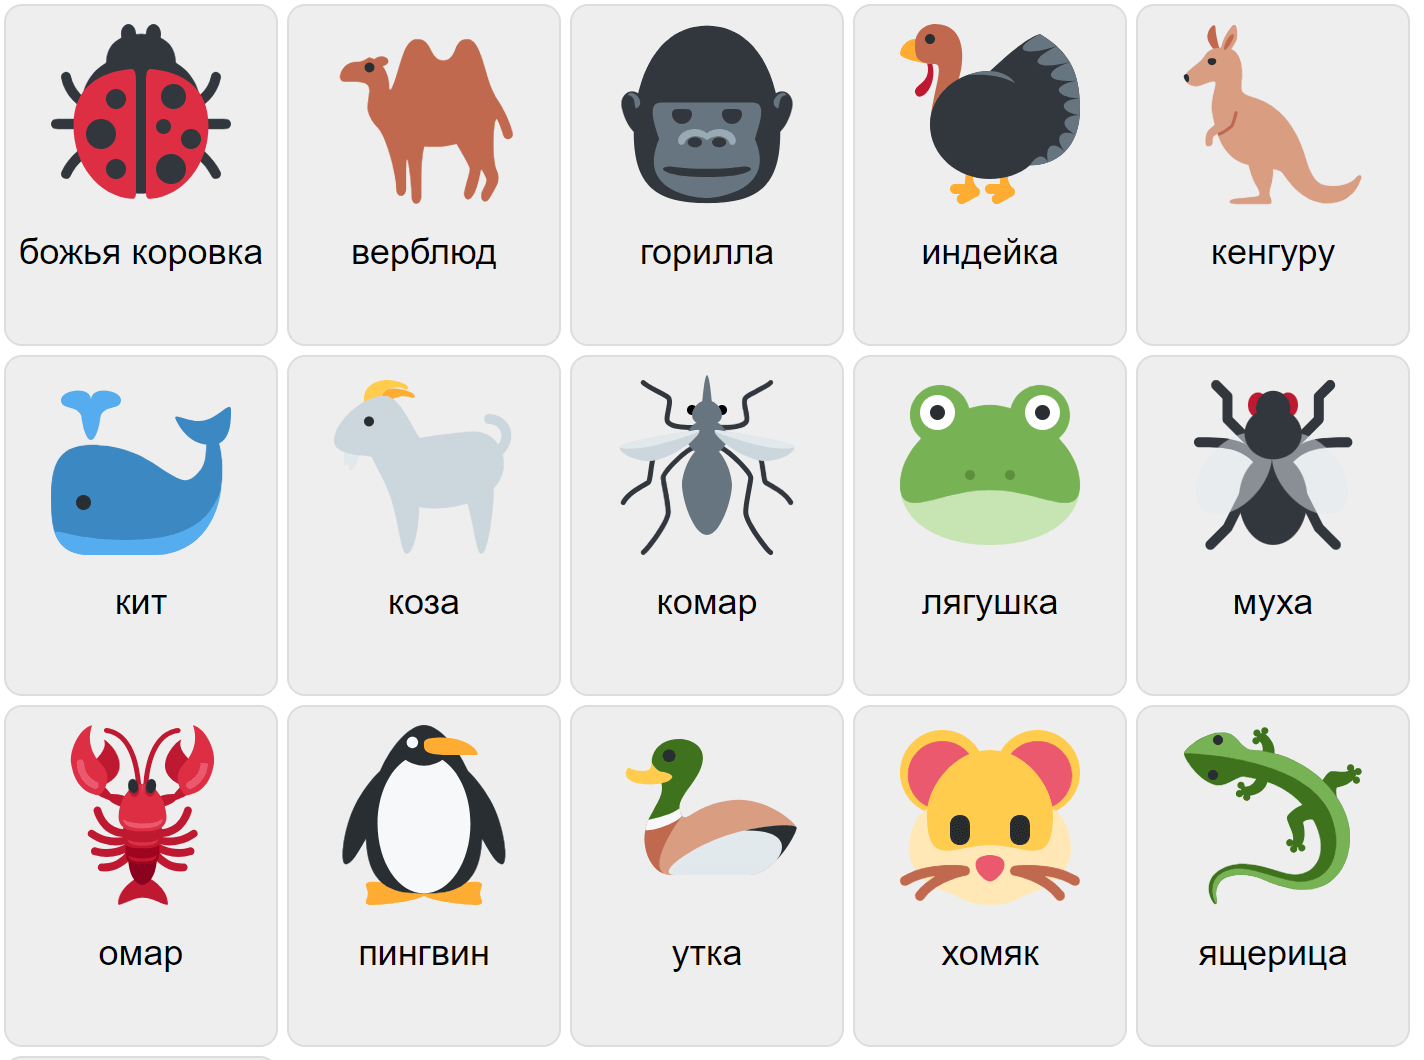 Tiere auf Russisch 2